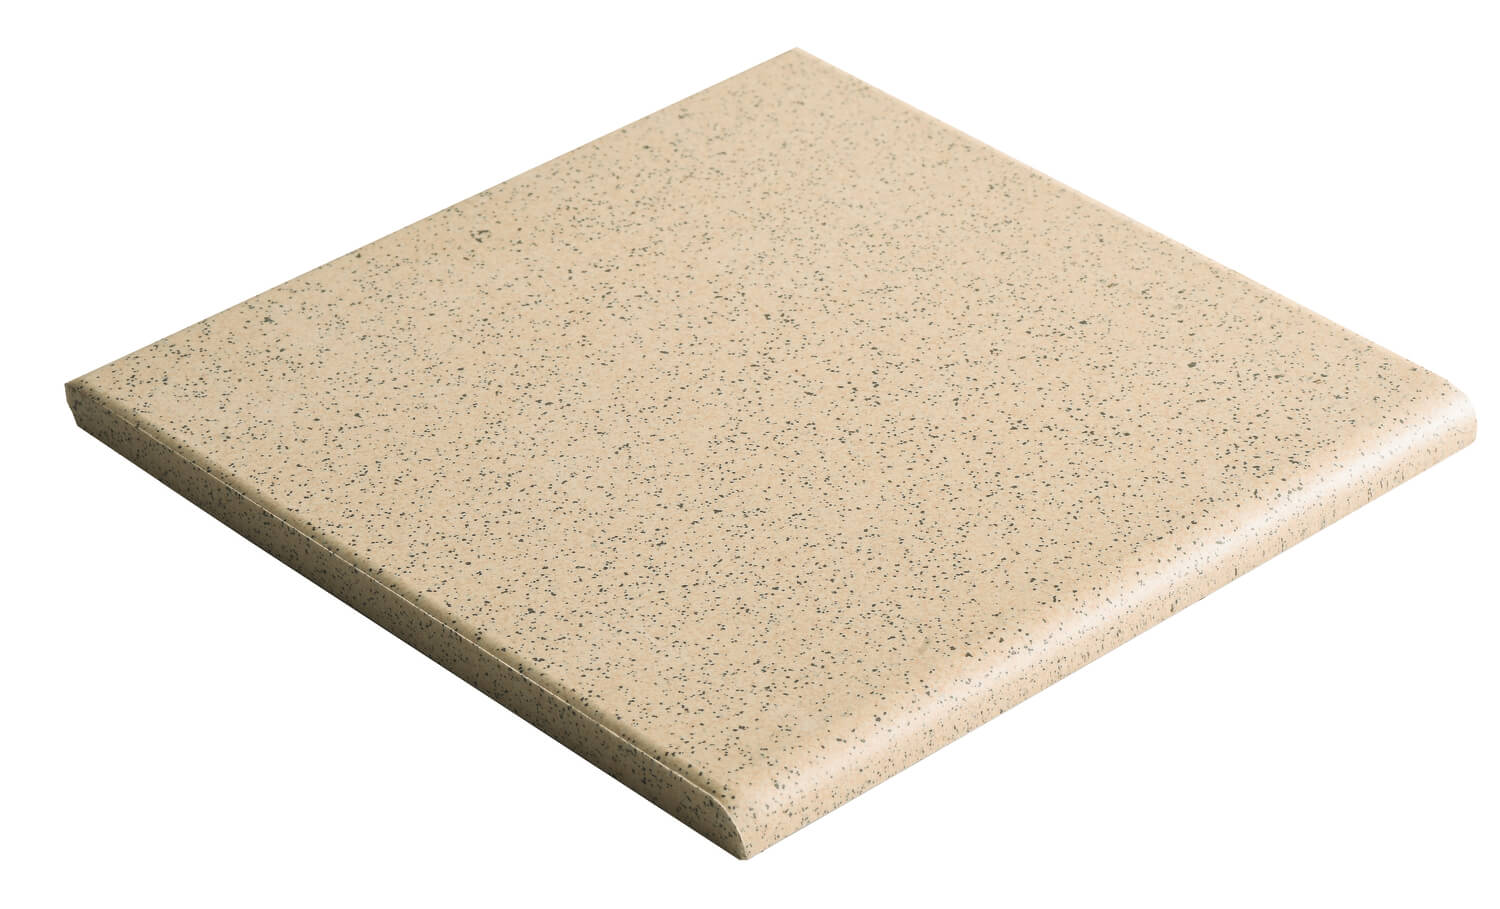 Dorset Woolliscroft Quartz Round Edge Slip Resistant Quarry Tile 148x148mm